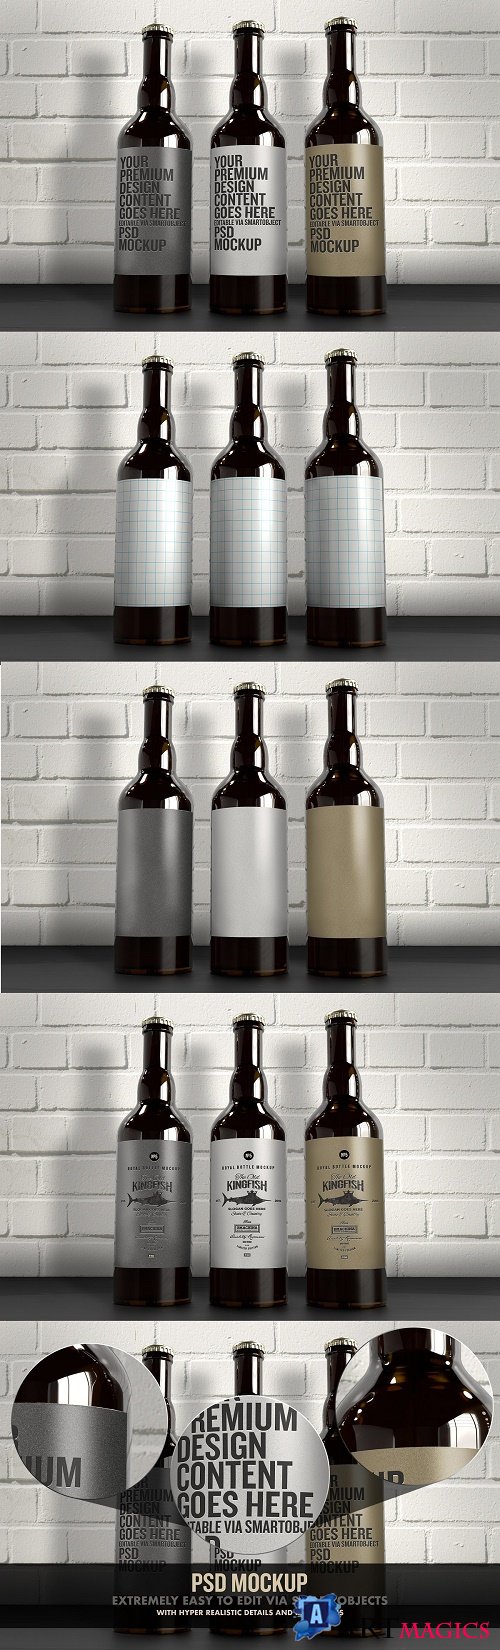 The 3 Beer Bottles Mockup - 4516634